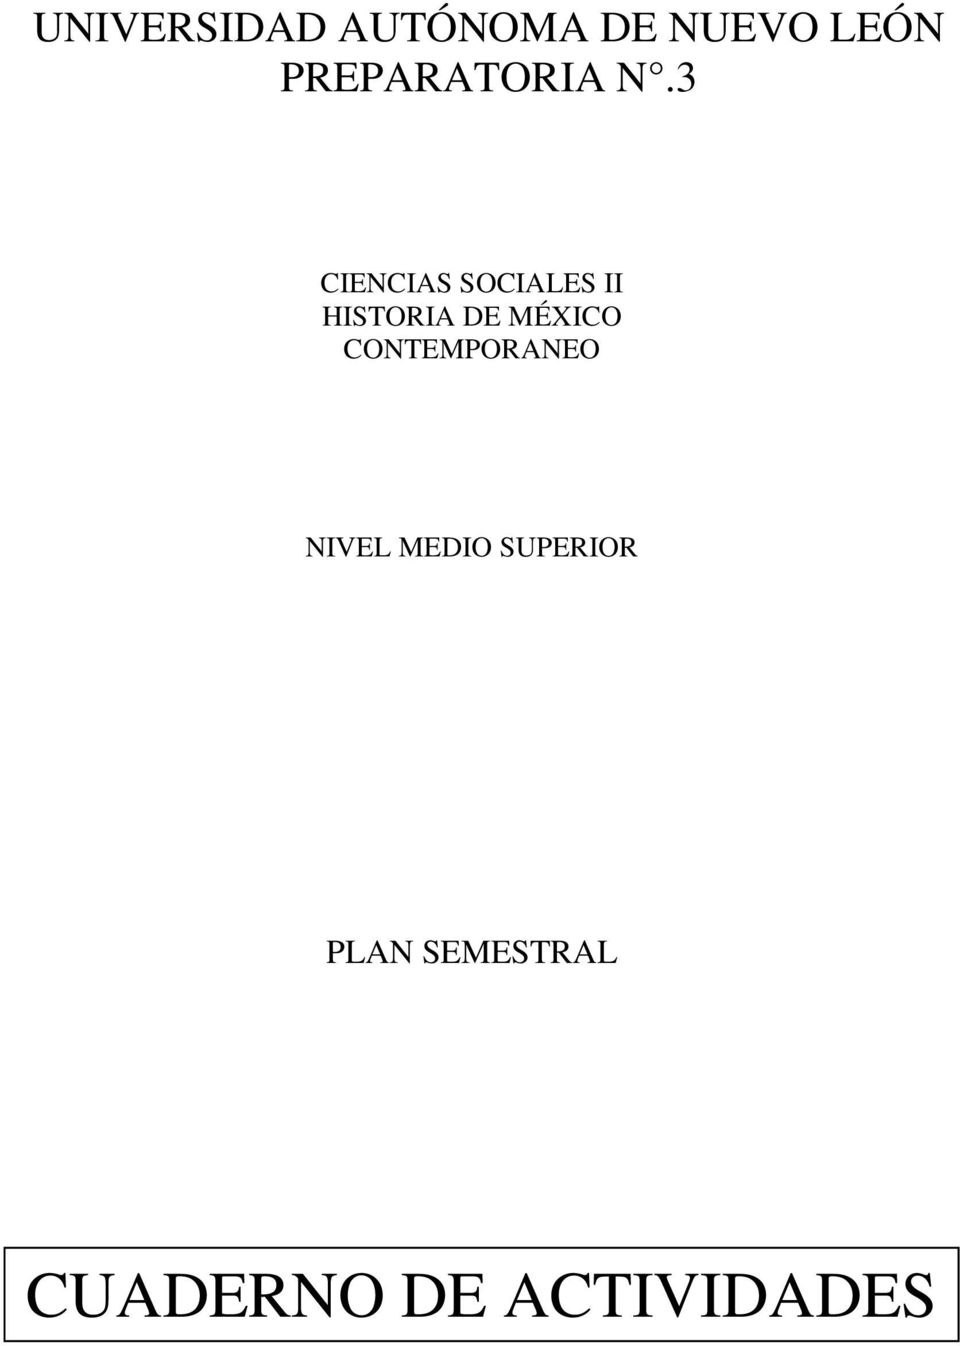 3 CIENCIAS SOCIALES II HISTORIA DE MÉXICO